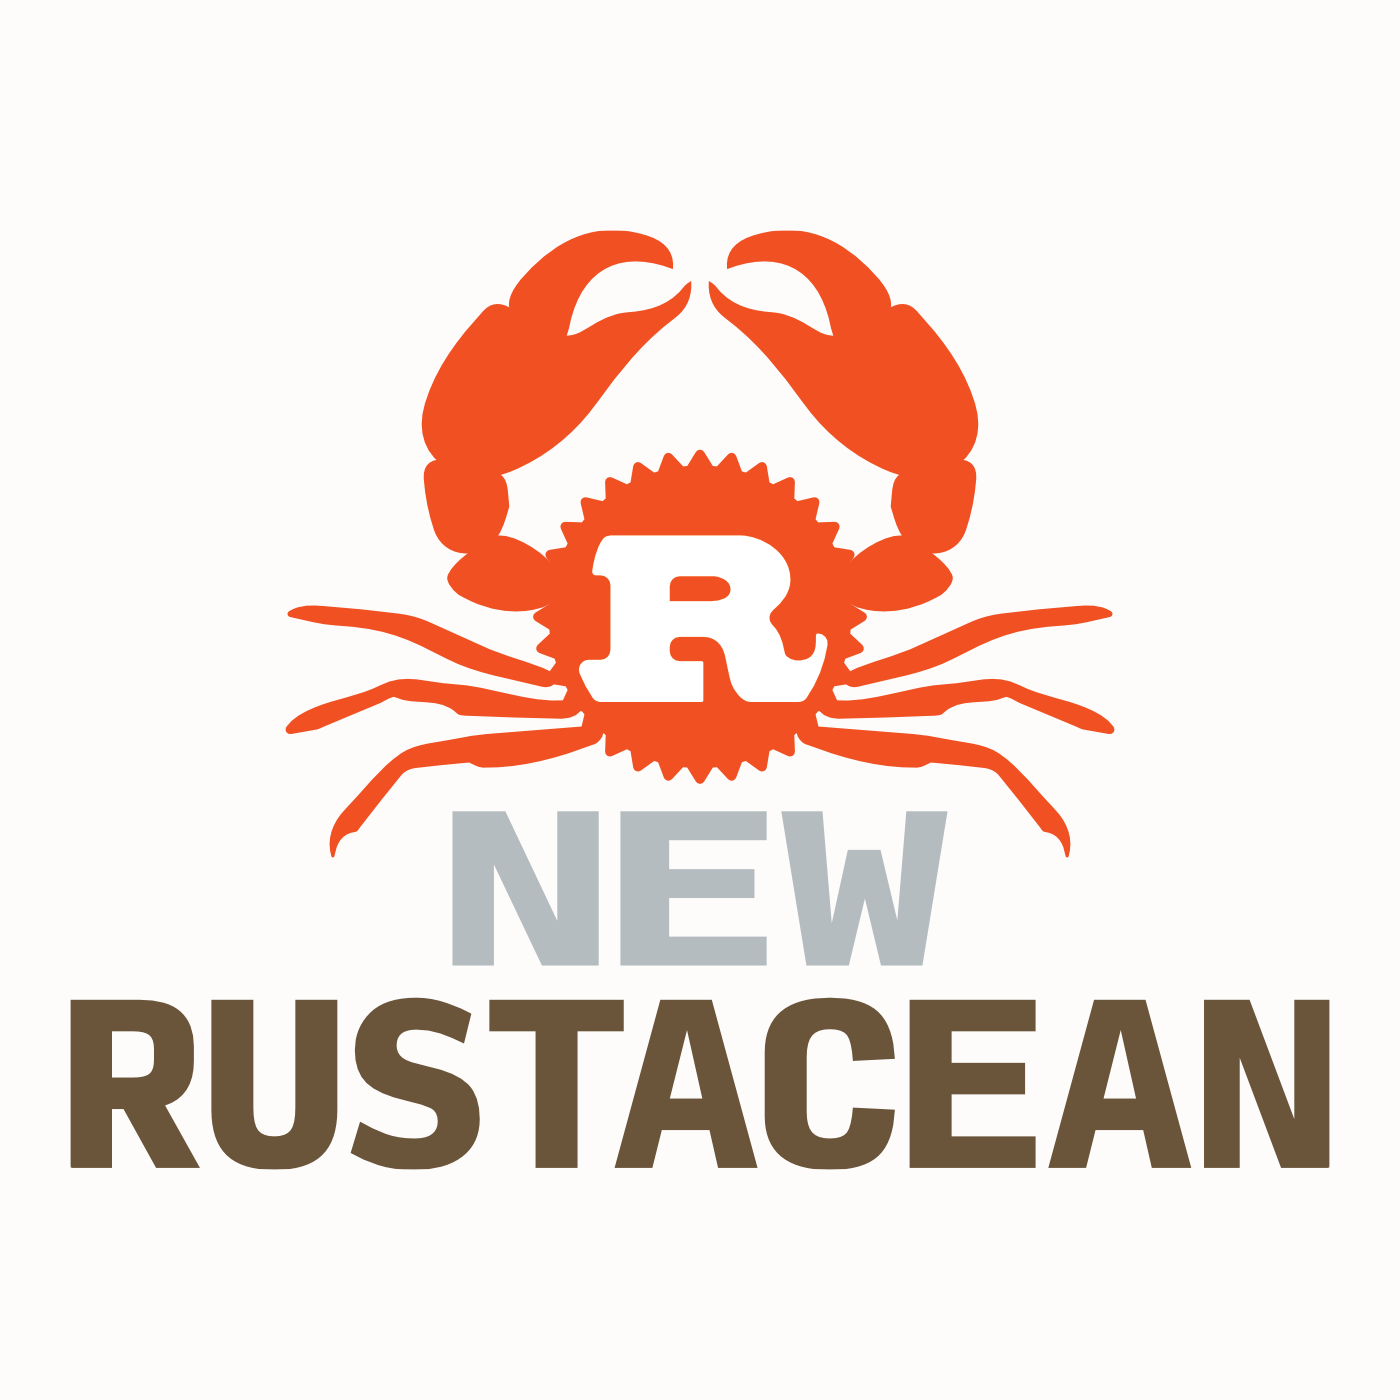 New Rustacean logo image